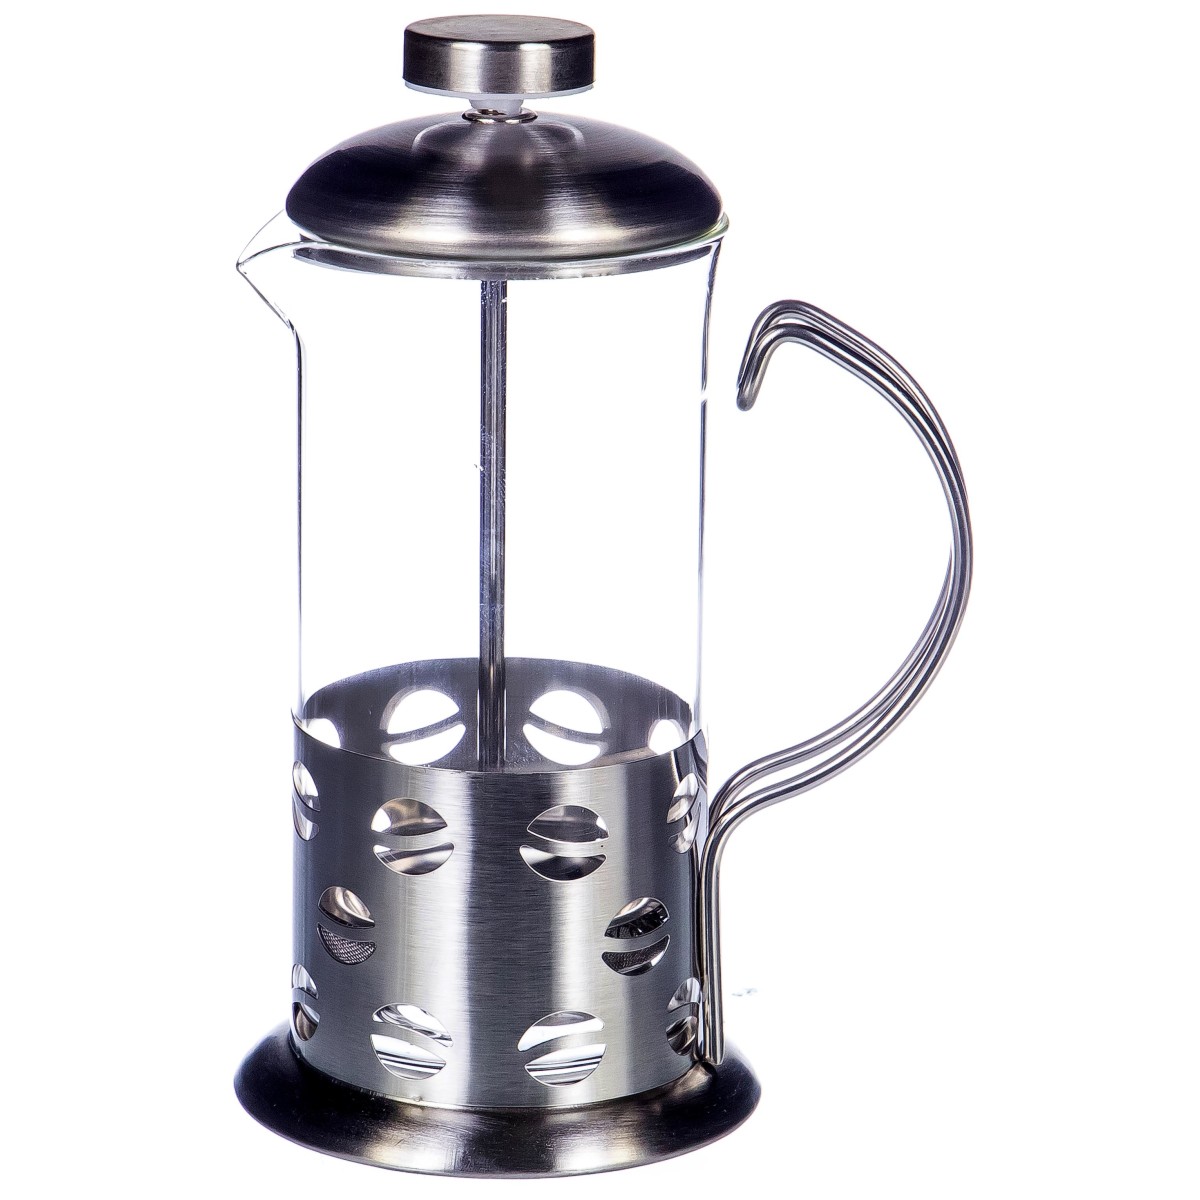 Поршневой заварочный чайник с прессом Tea and Coffee Maker 600мл оптом